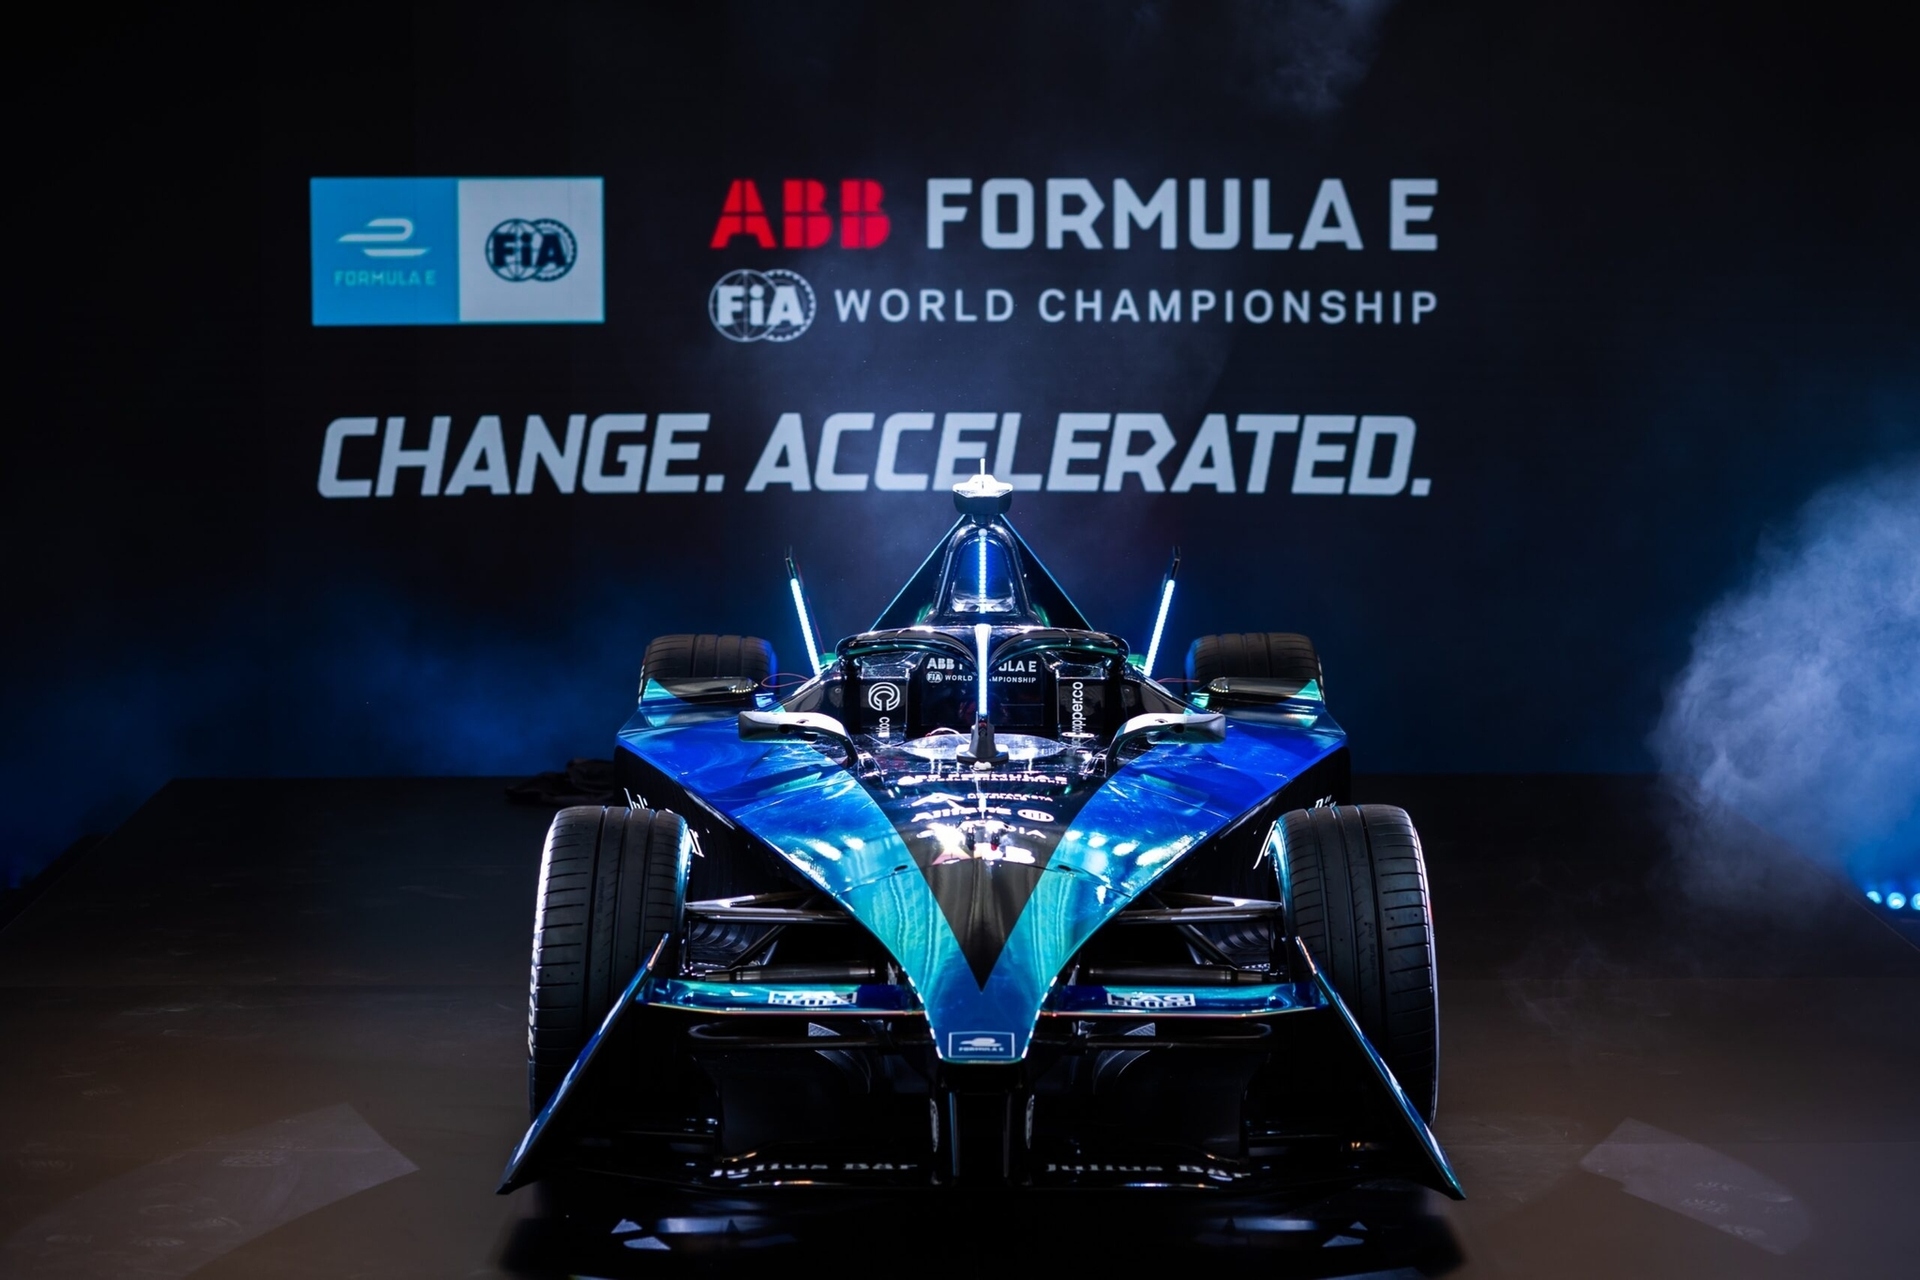 Gen3: jednomístný vůz Gen3 je vysoce inovativní a bude se používat od deváté sezóny mistrovství světa FIA ​​ABB Formule E: srovnává kruh mezi výkonem a udržitelností